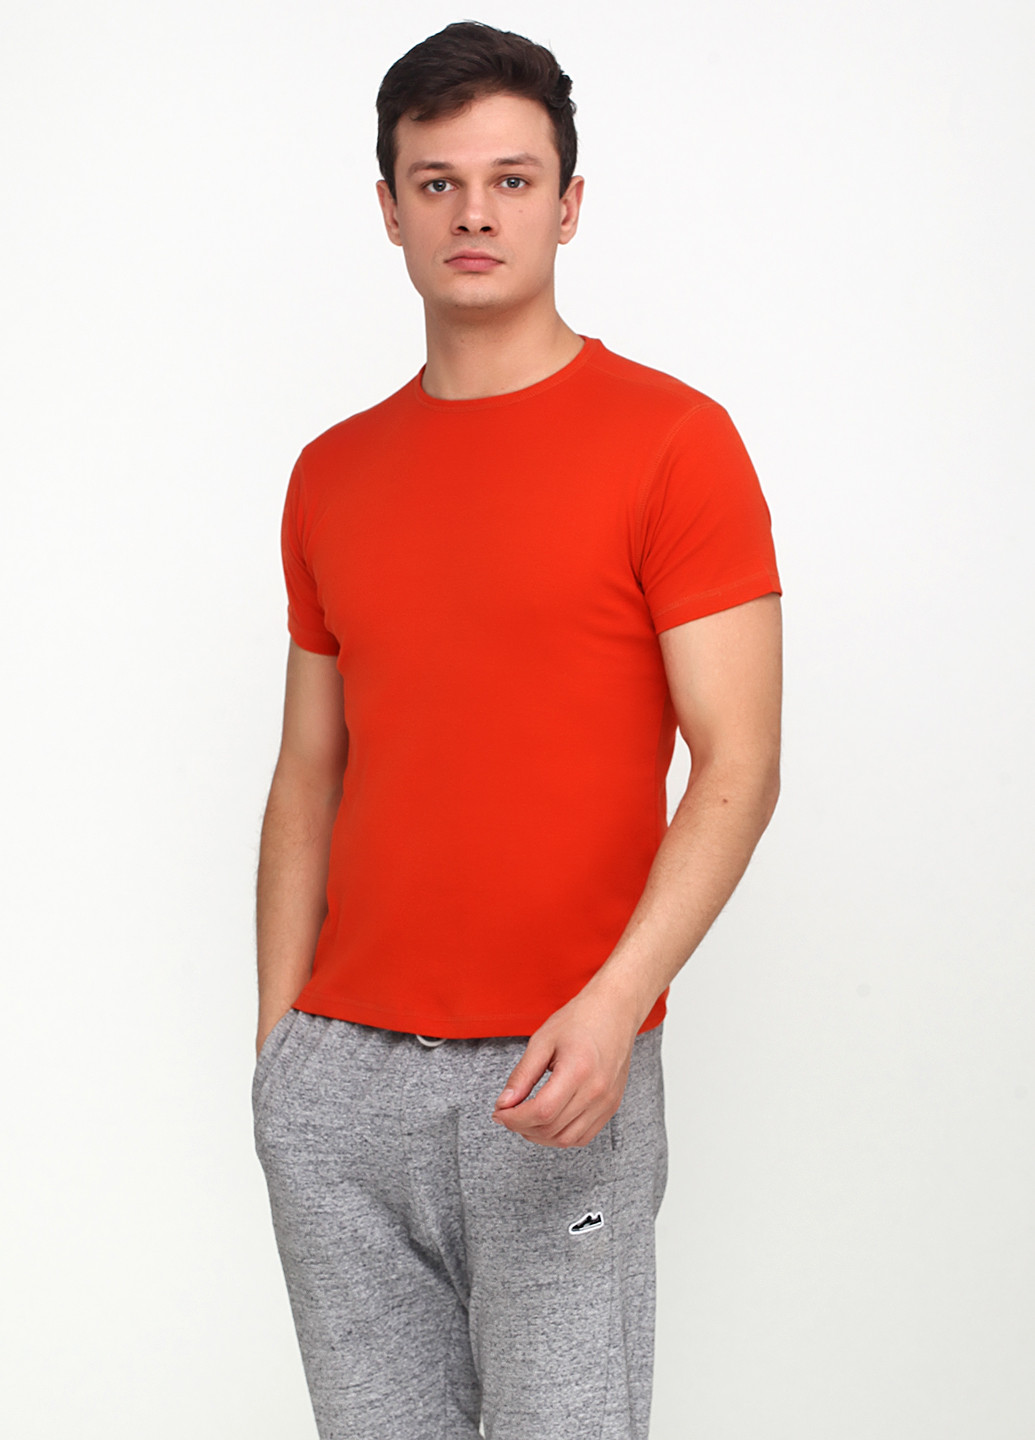 Оранжево-красная футболка Avis